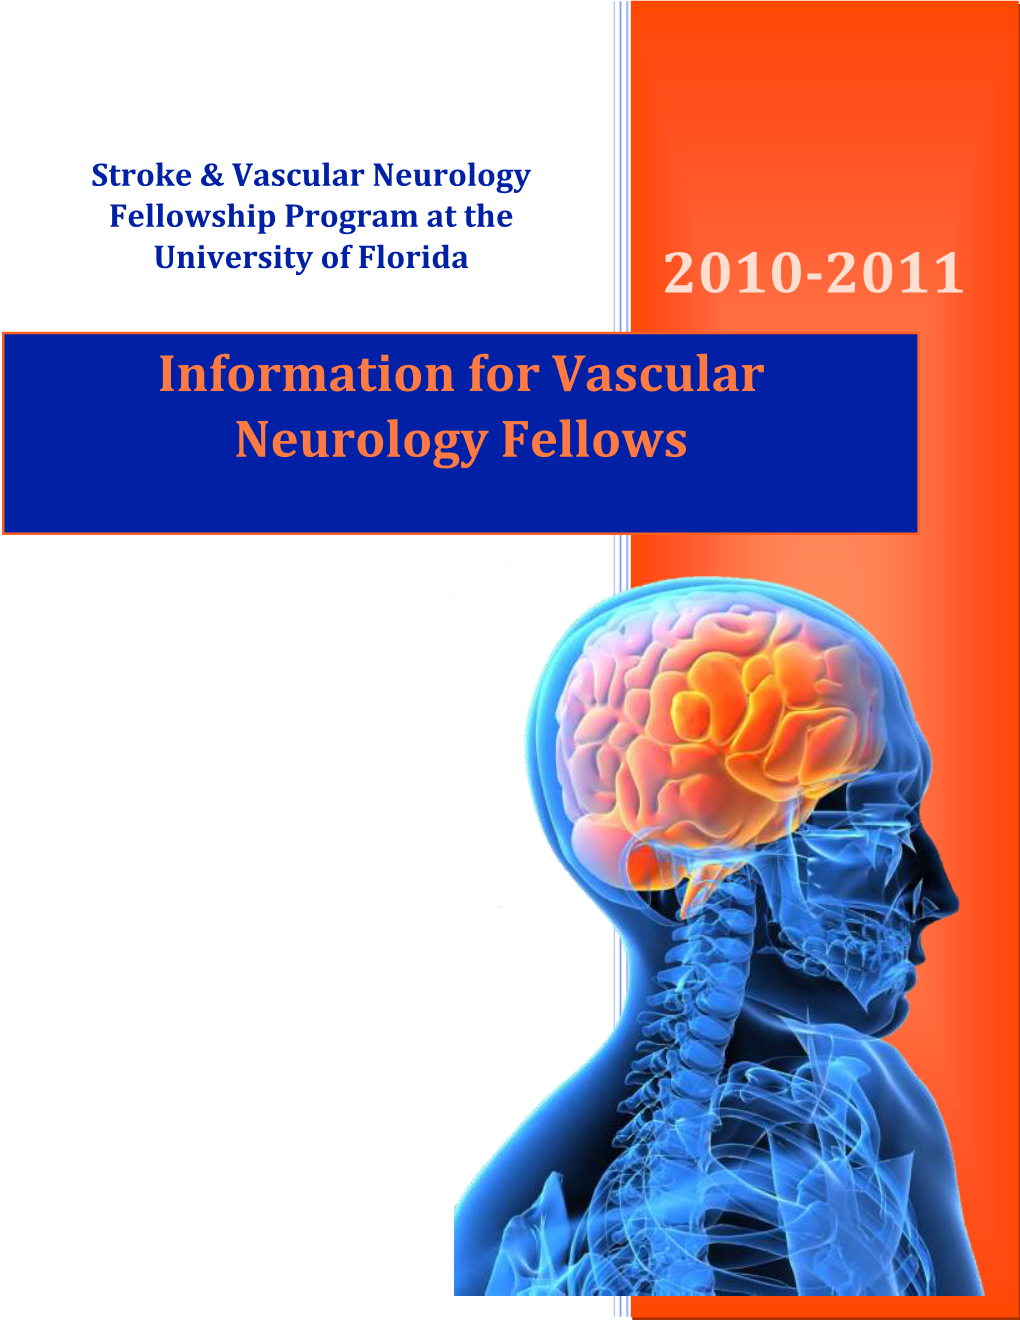 Information for Vascular Neurology Fellows